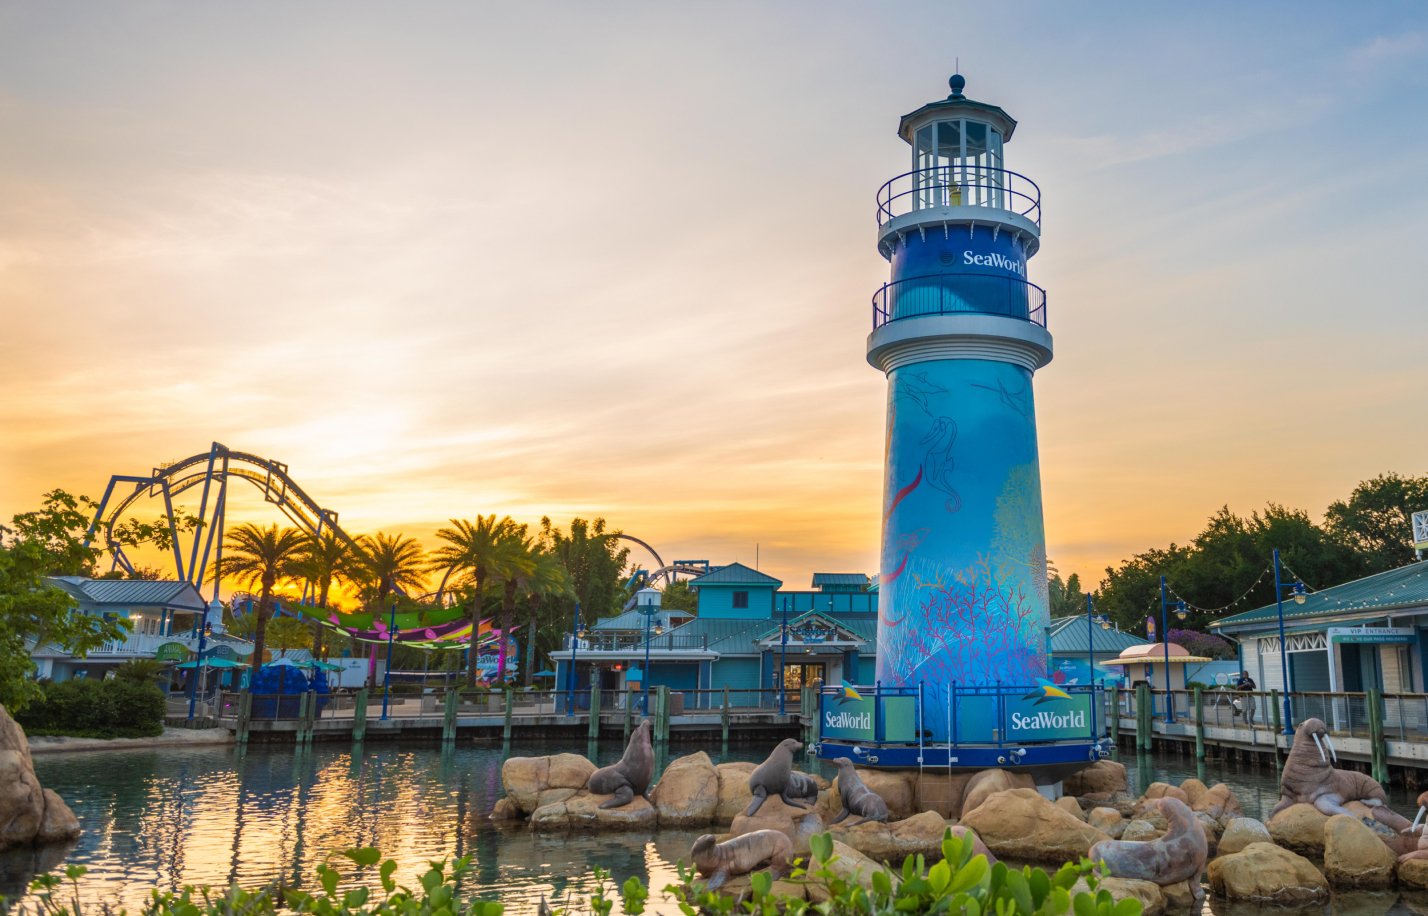 Sunset on the SeaWorld Orlando Lighthouse.